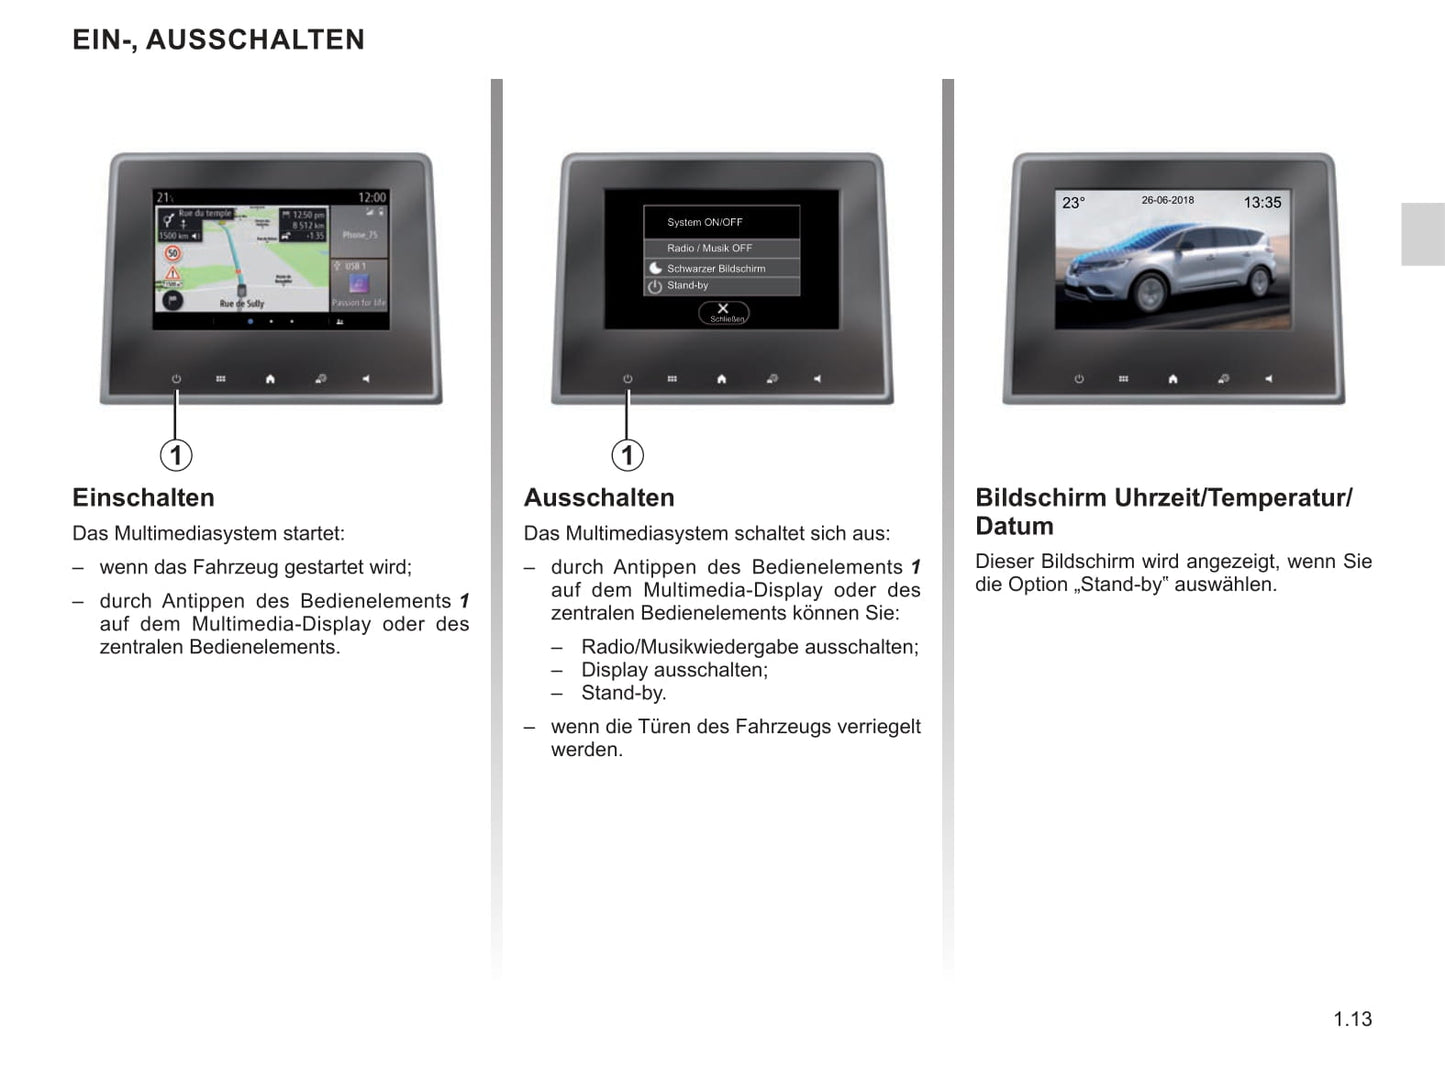 Renault Easy Connect Multimediasystemen Bedienungsanleitung 2019 - 2020